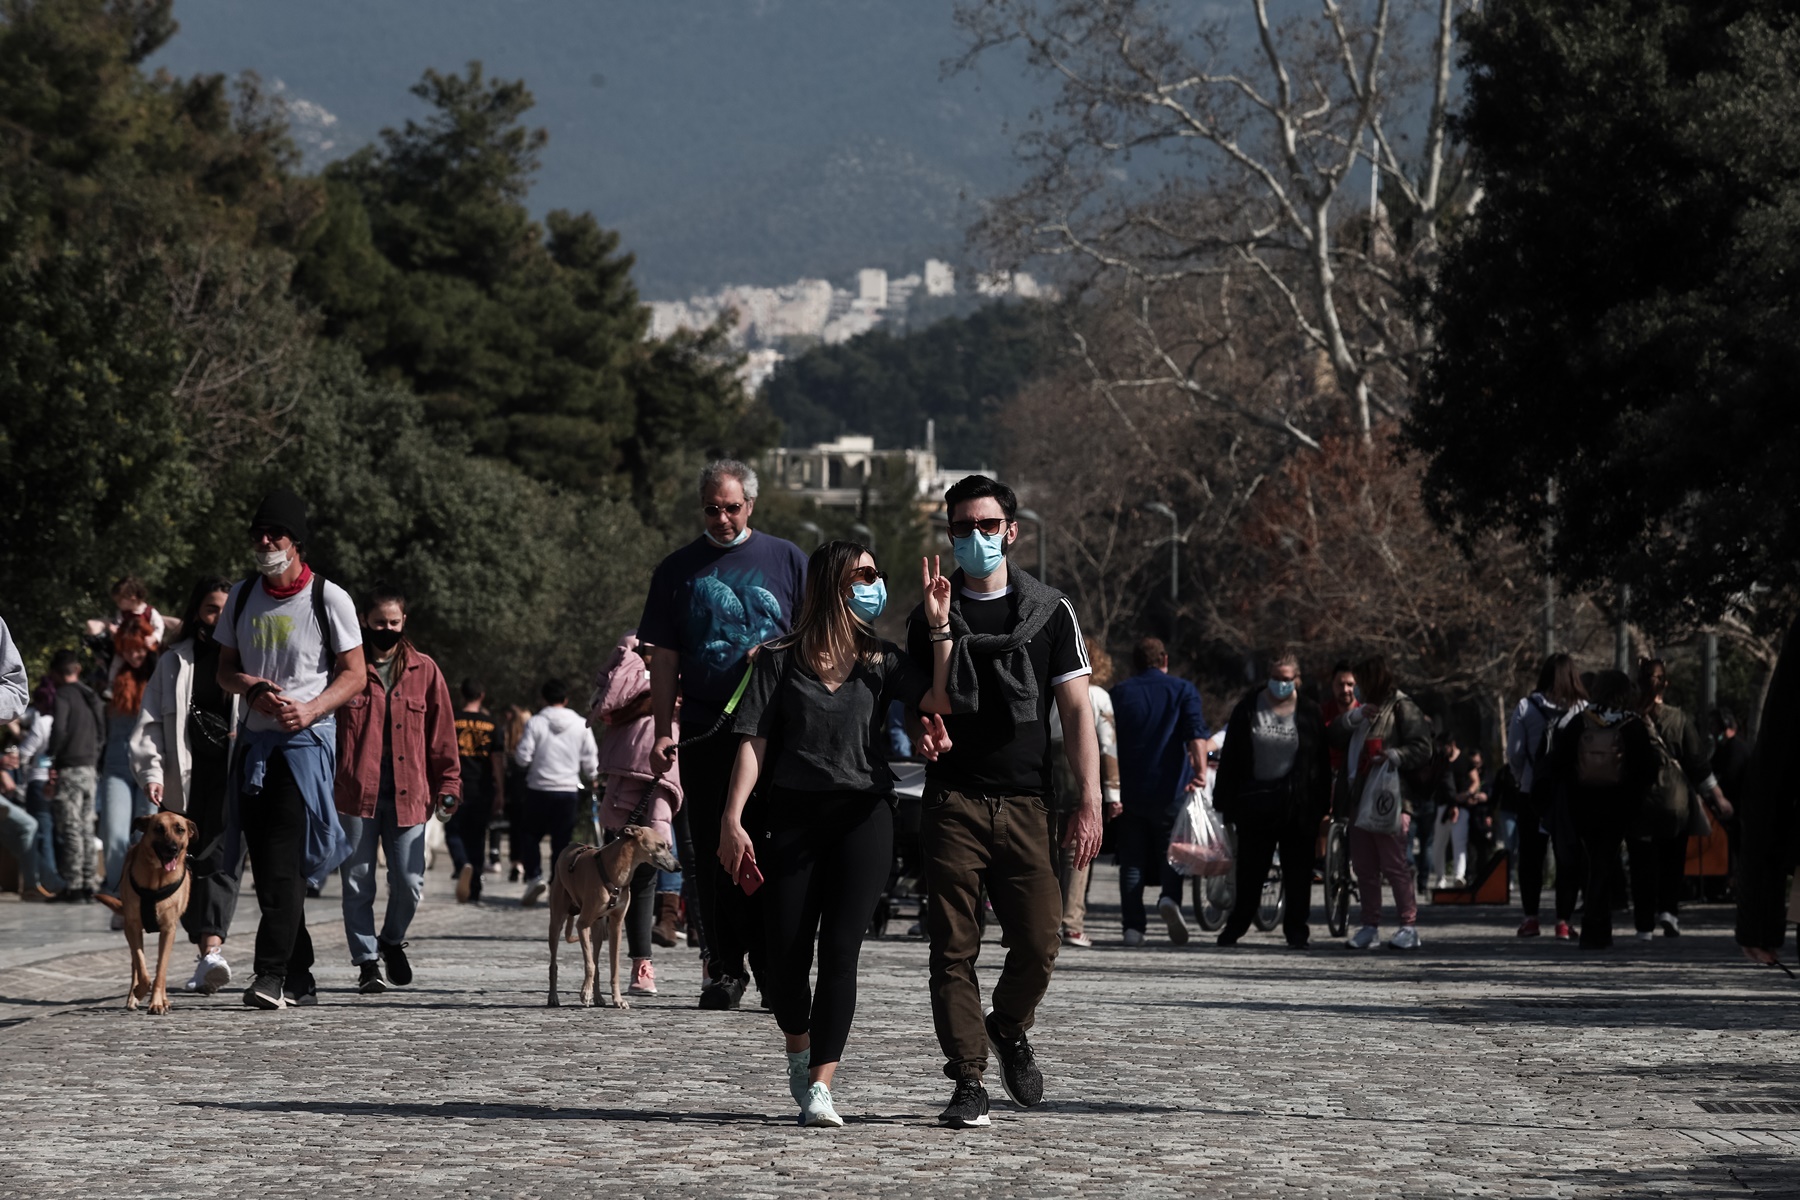 Αύξηση κρουσμάτων Ελλάδα: Οι 4 λόγοι που προκάλεσαν την “έκρηξη”